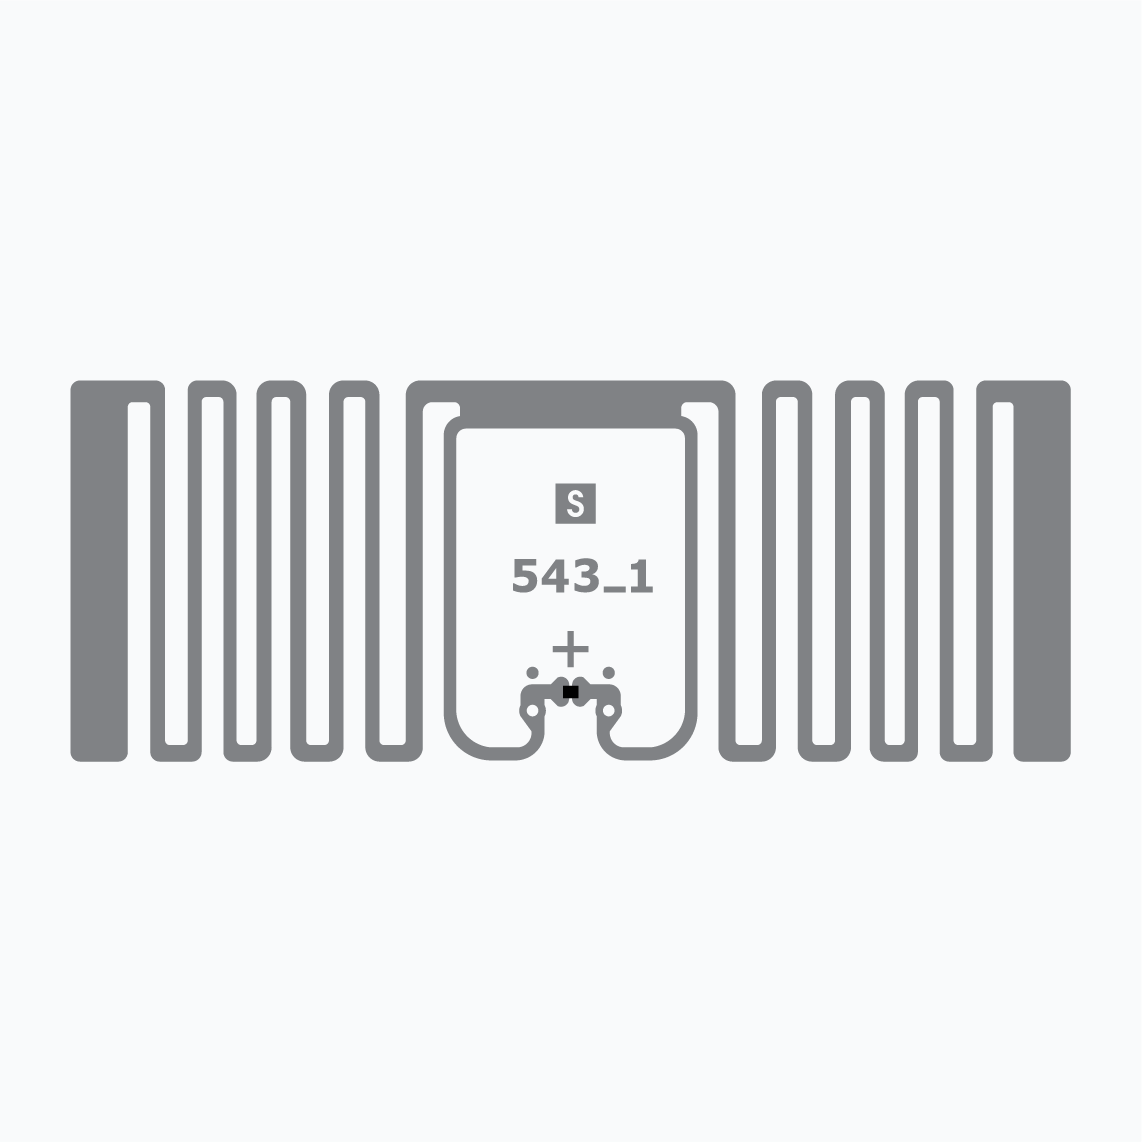 UHF RFID Inlay: Miniweb UCODE 9